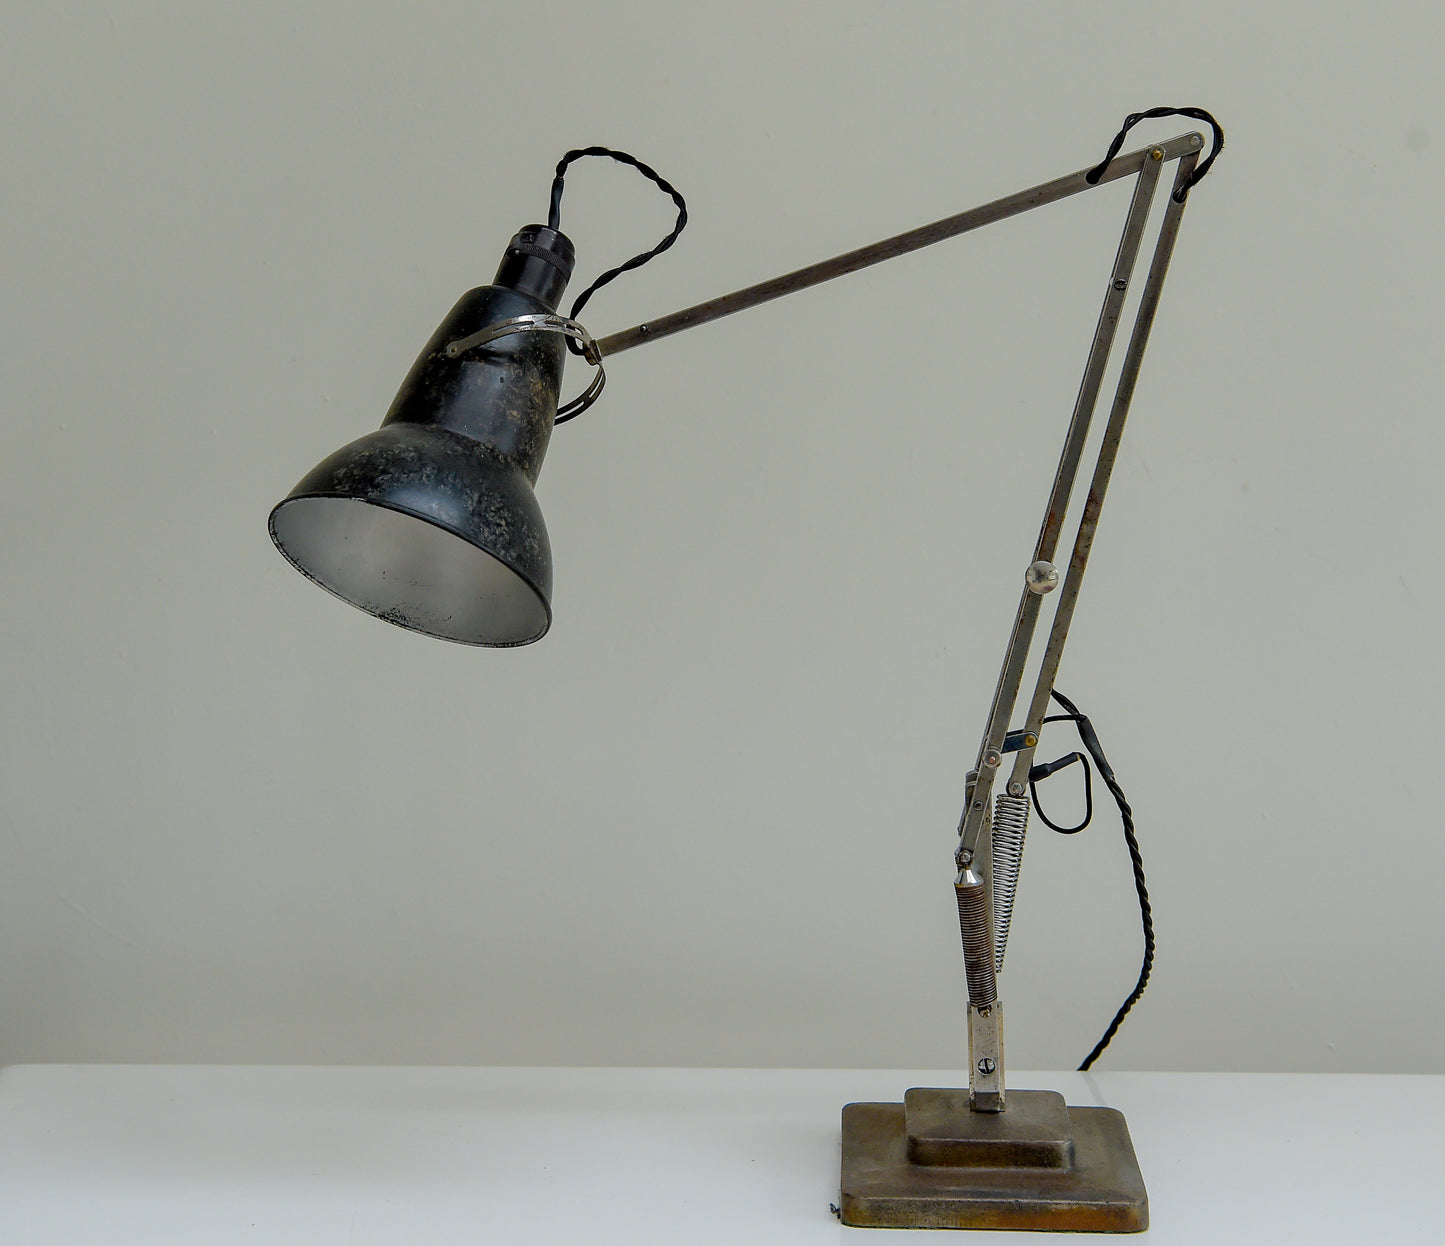 Rare 1940's Bakelite Shade Anglepoise desk lamp in original condition. Model 1227